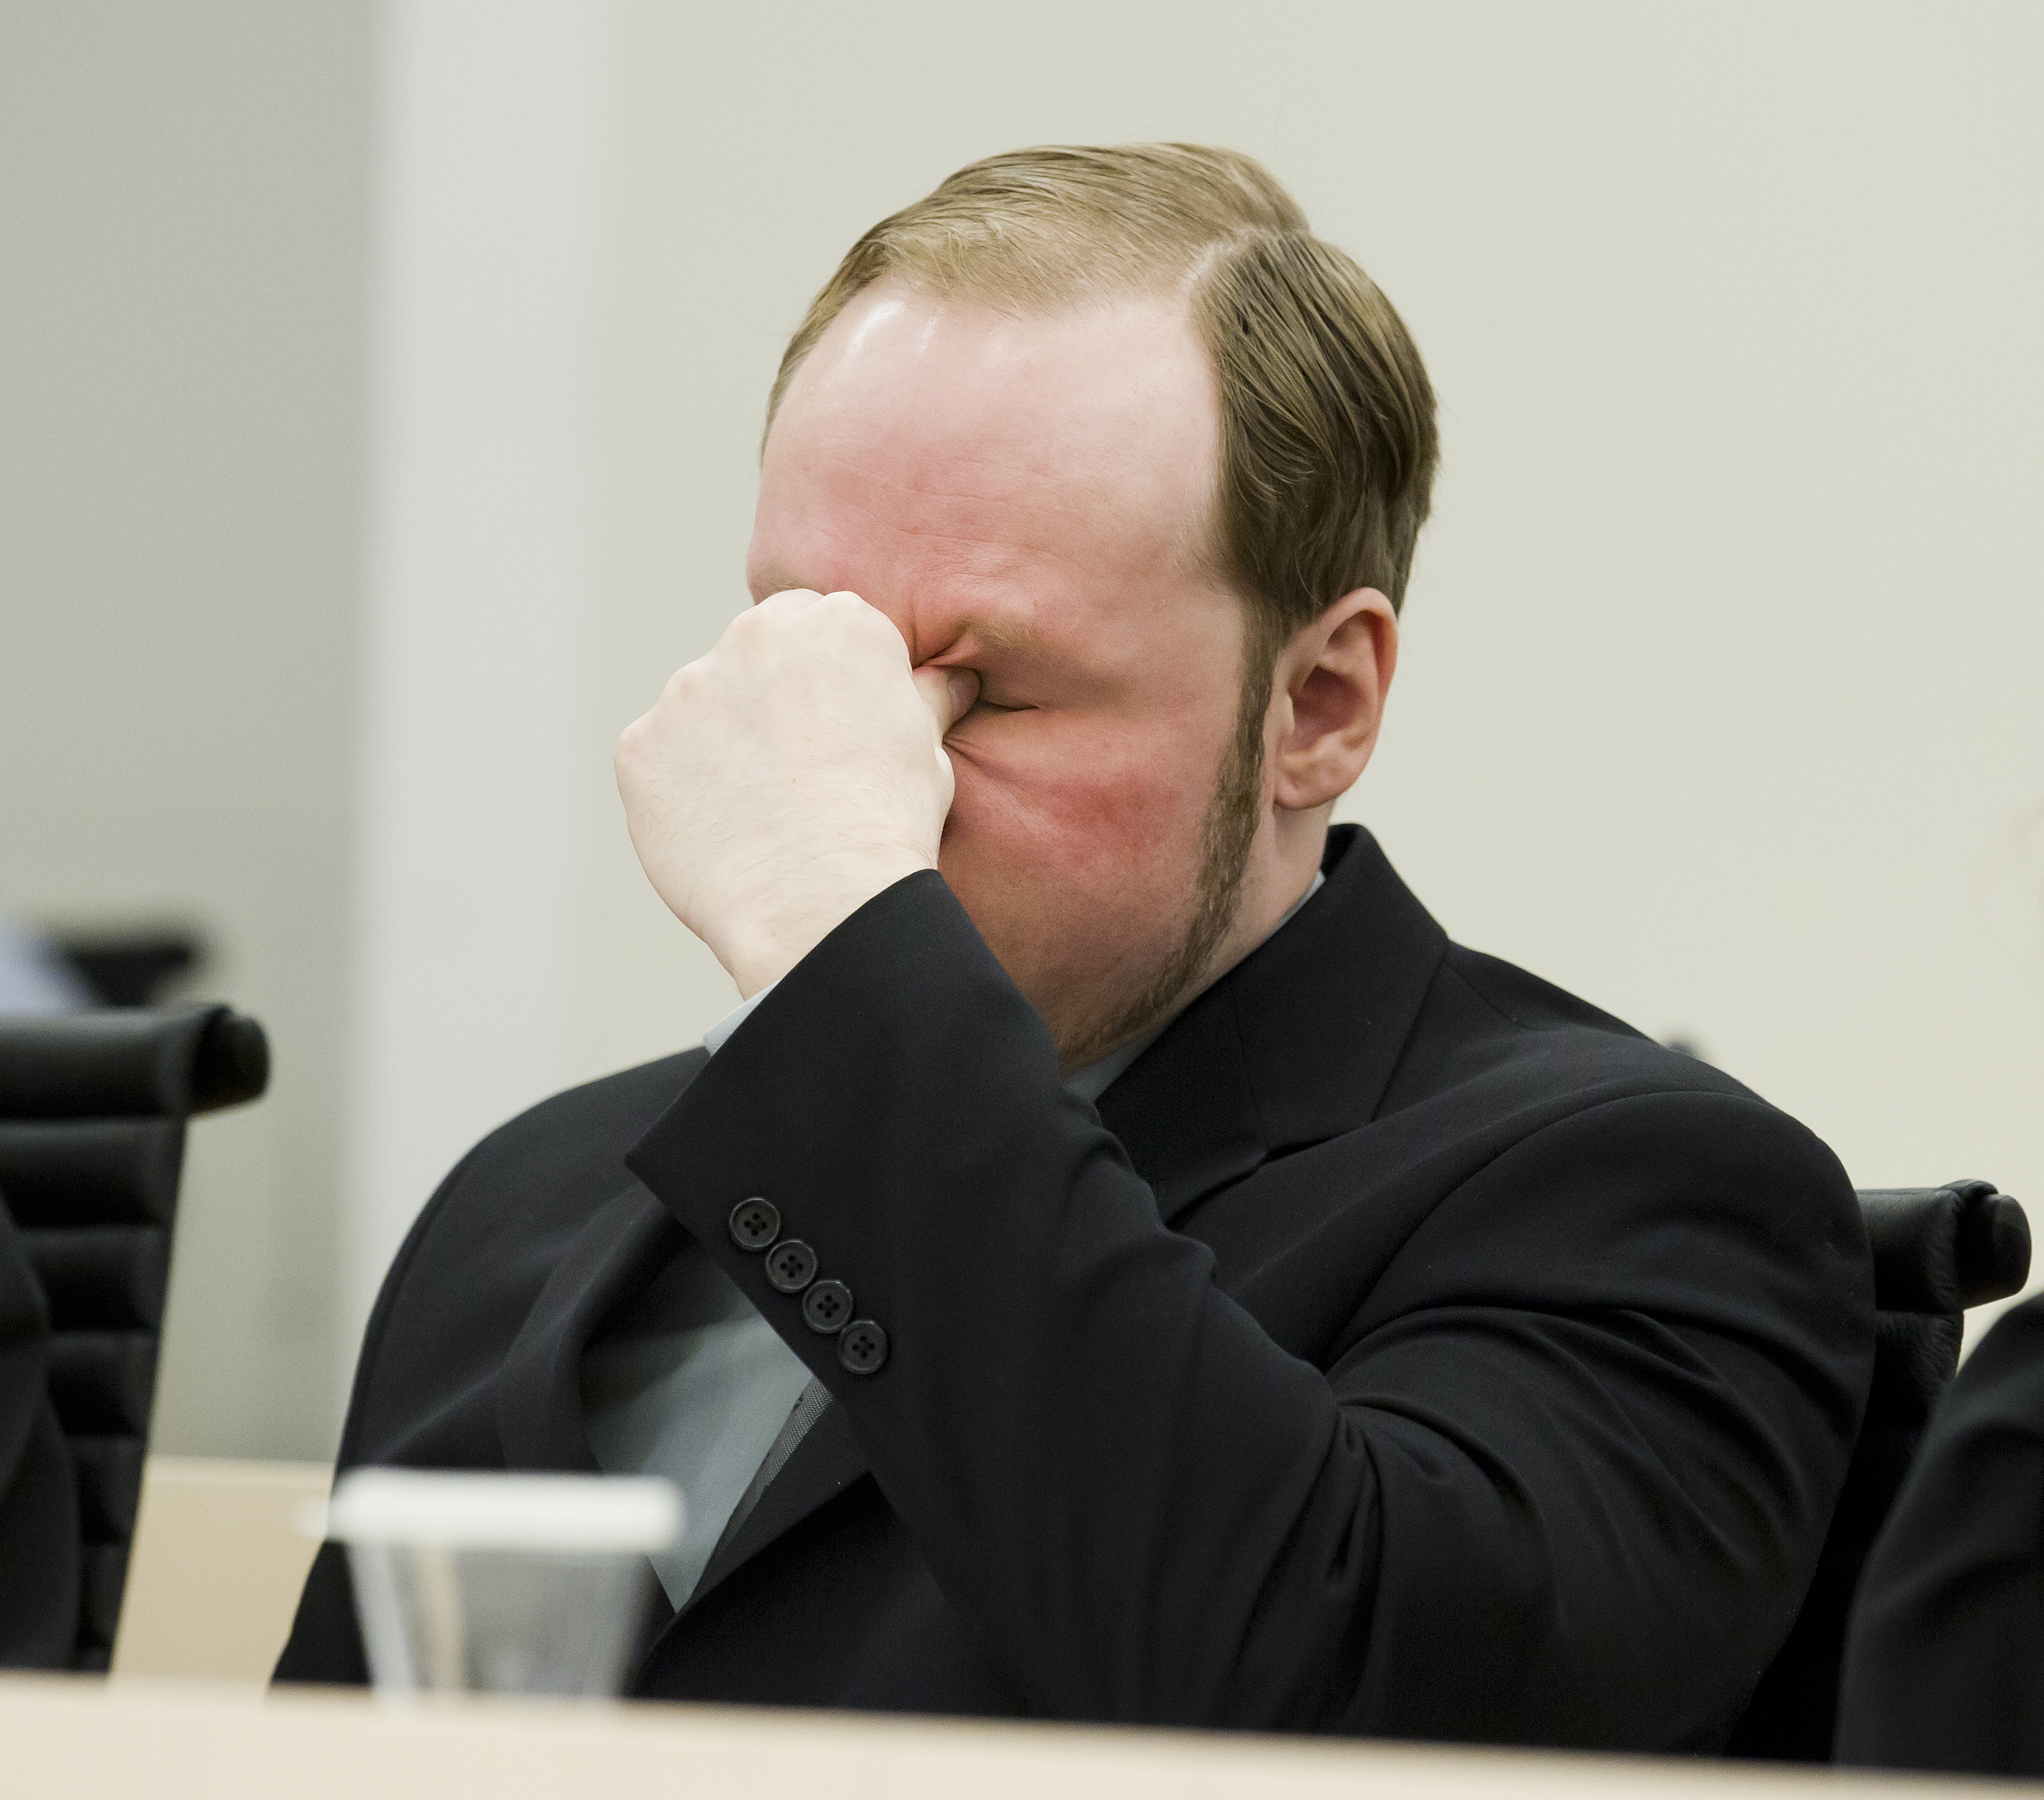 Massmördare, Anders Behring Breivik, Rättegång, terrorist, Mattias Gardell, Fjordman, Oslo